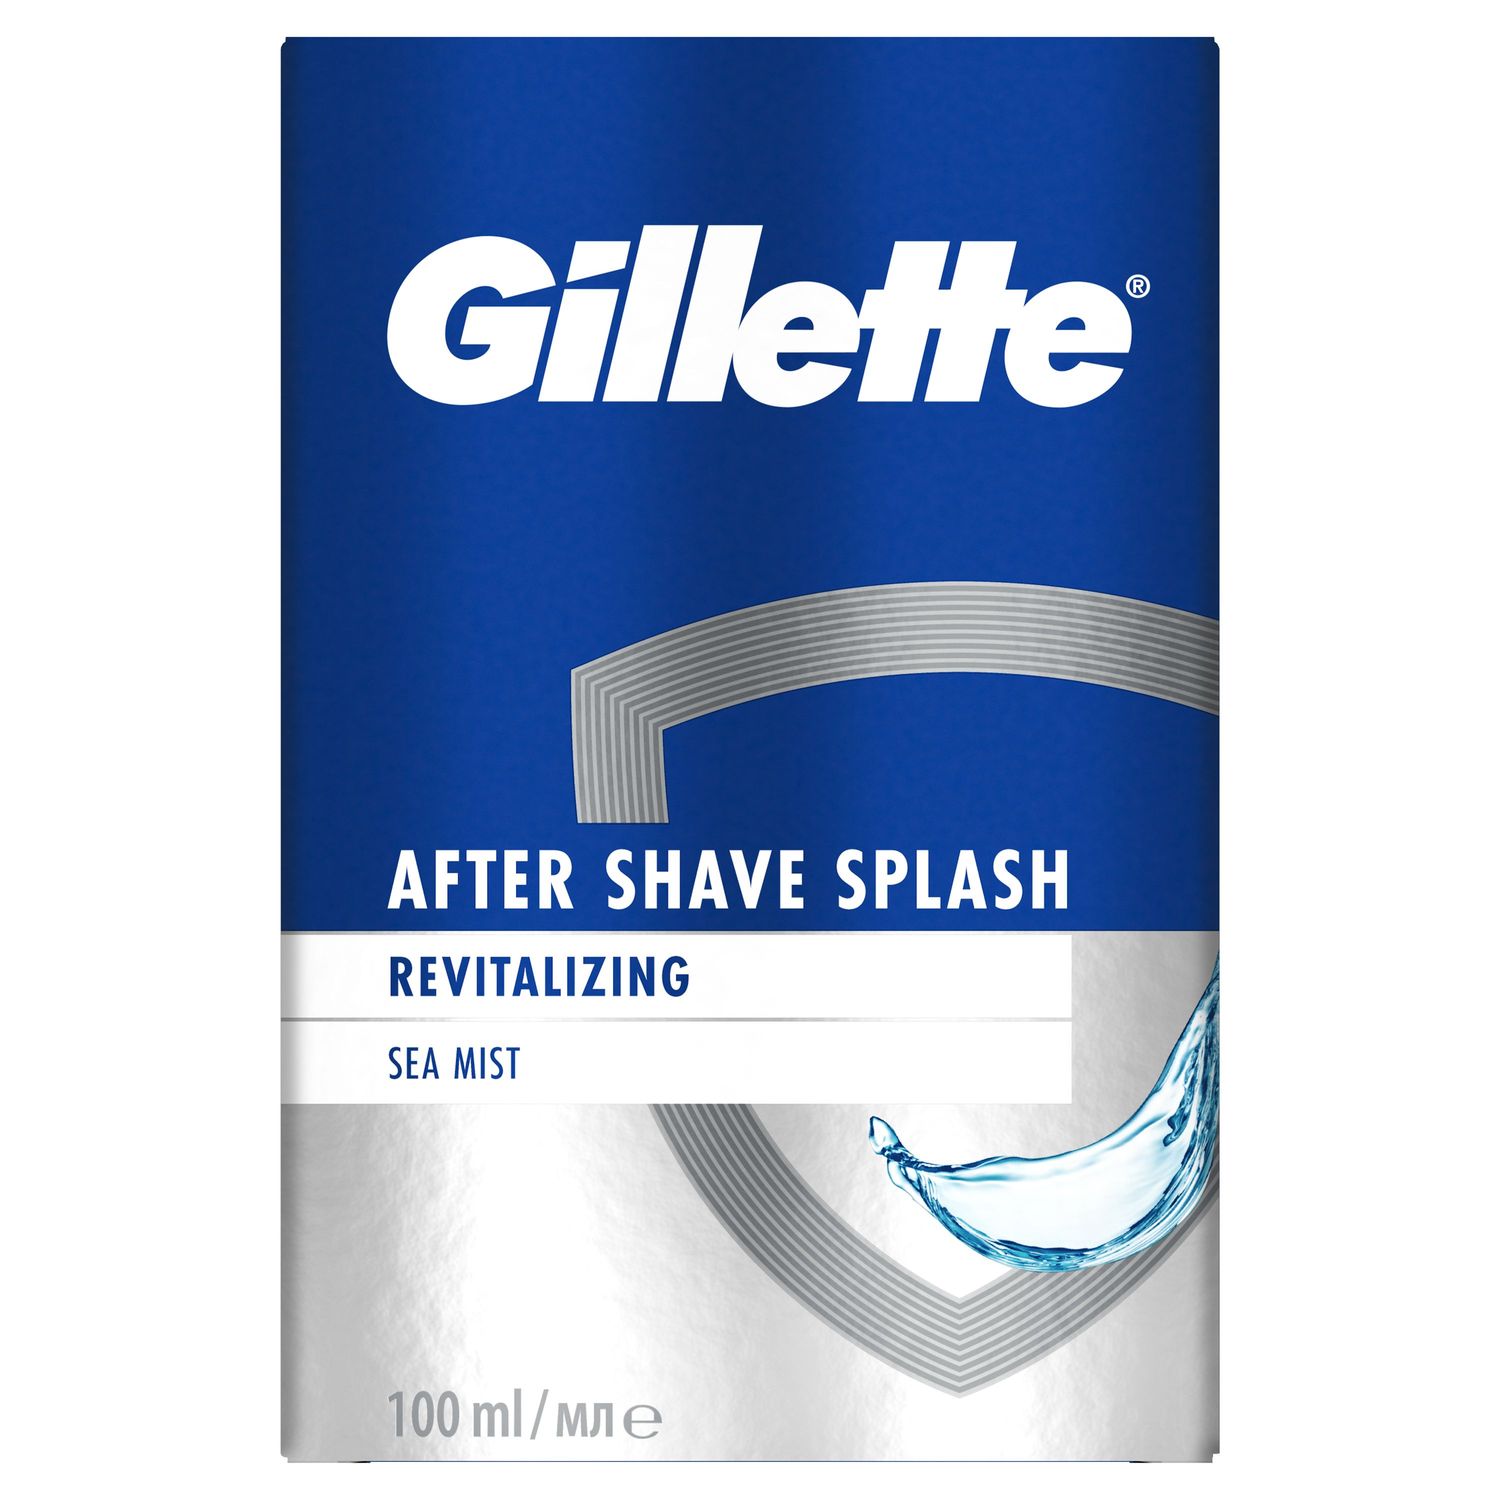 Лосьон после бритья Gillette Series Sea Mist, восстанавливающий, 100 мл - фото 2